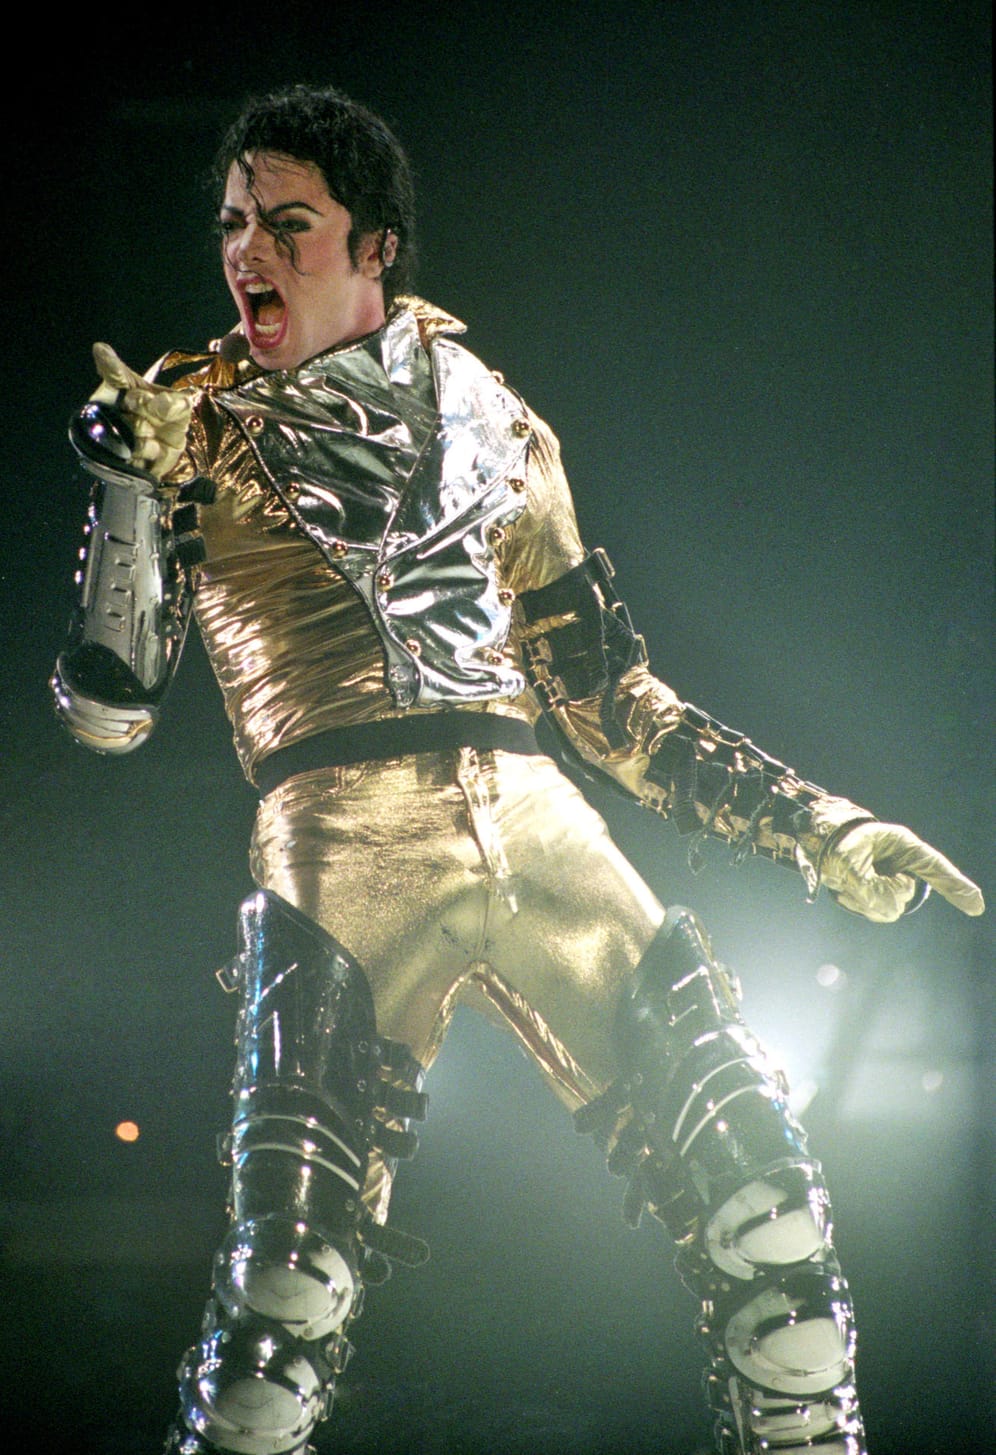 November 1996: In Neuseeland performt der King of Pop bei seiner dritten und letzten Solo-Welttournee: Die "HIStory World Tour".